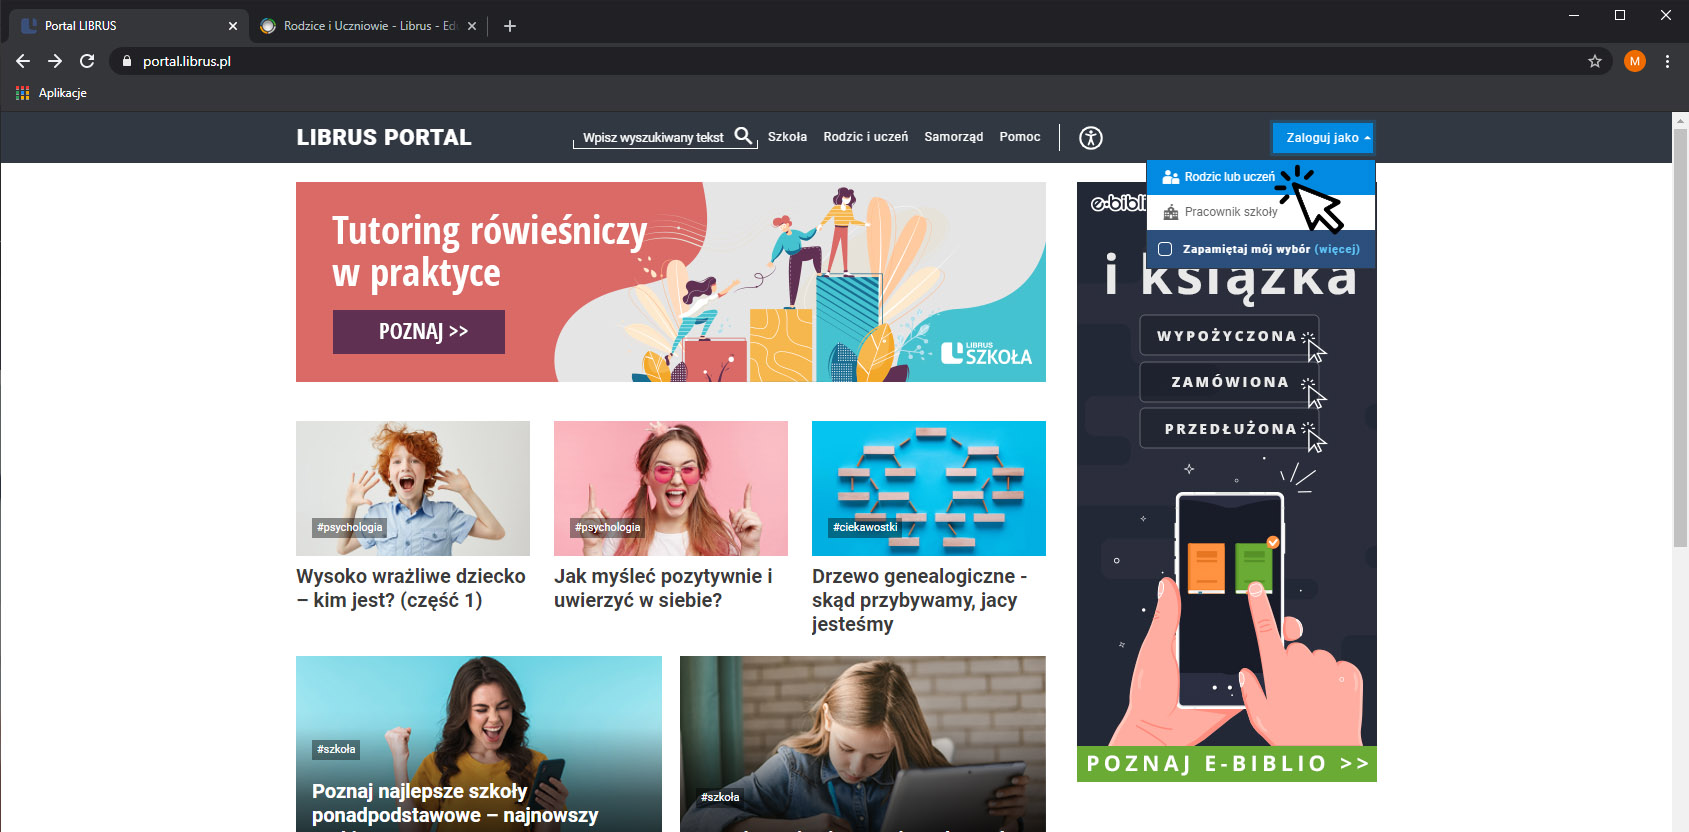 Obraz przedstawiający zrzut ekranu strony internetowej portal.librus.pl, na której widoczne są kafelki z uśmiechniętymi twarzami dzieci i rodziców. Po prawej stronie w rogu widoczna jest duża strzałka wskazująca na napis Zaloguj jako rodzic lub uczeń.